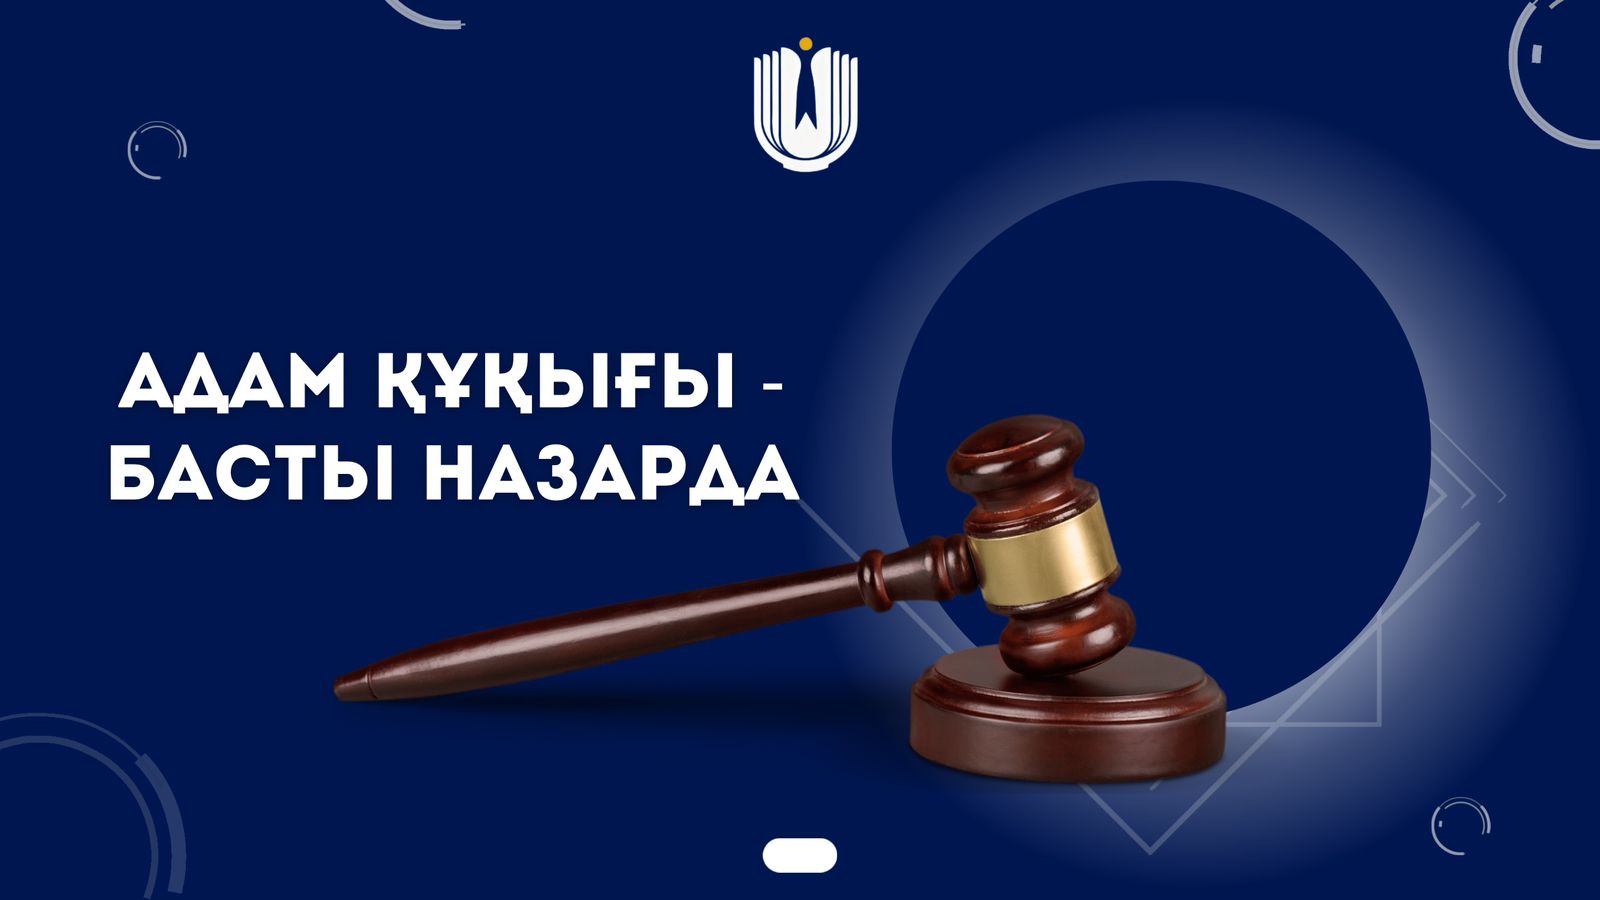 Представителем Уполномоченного по правам человека по Павлодарской области пресечен факт жестокого обращения в уголовно-исполнительном учреждении